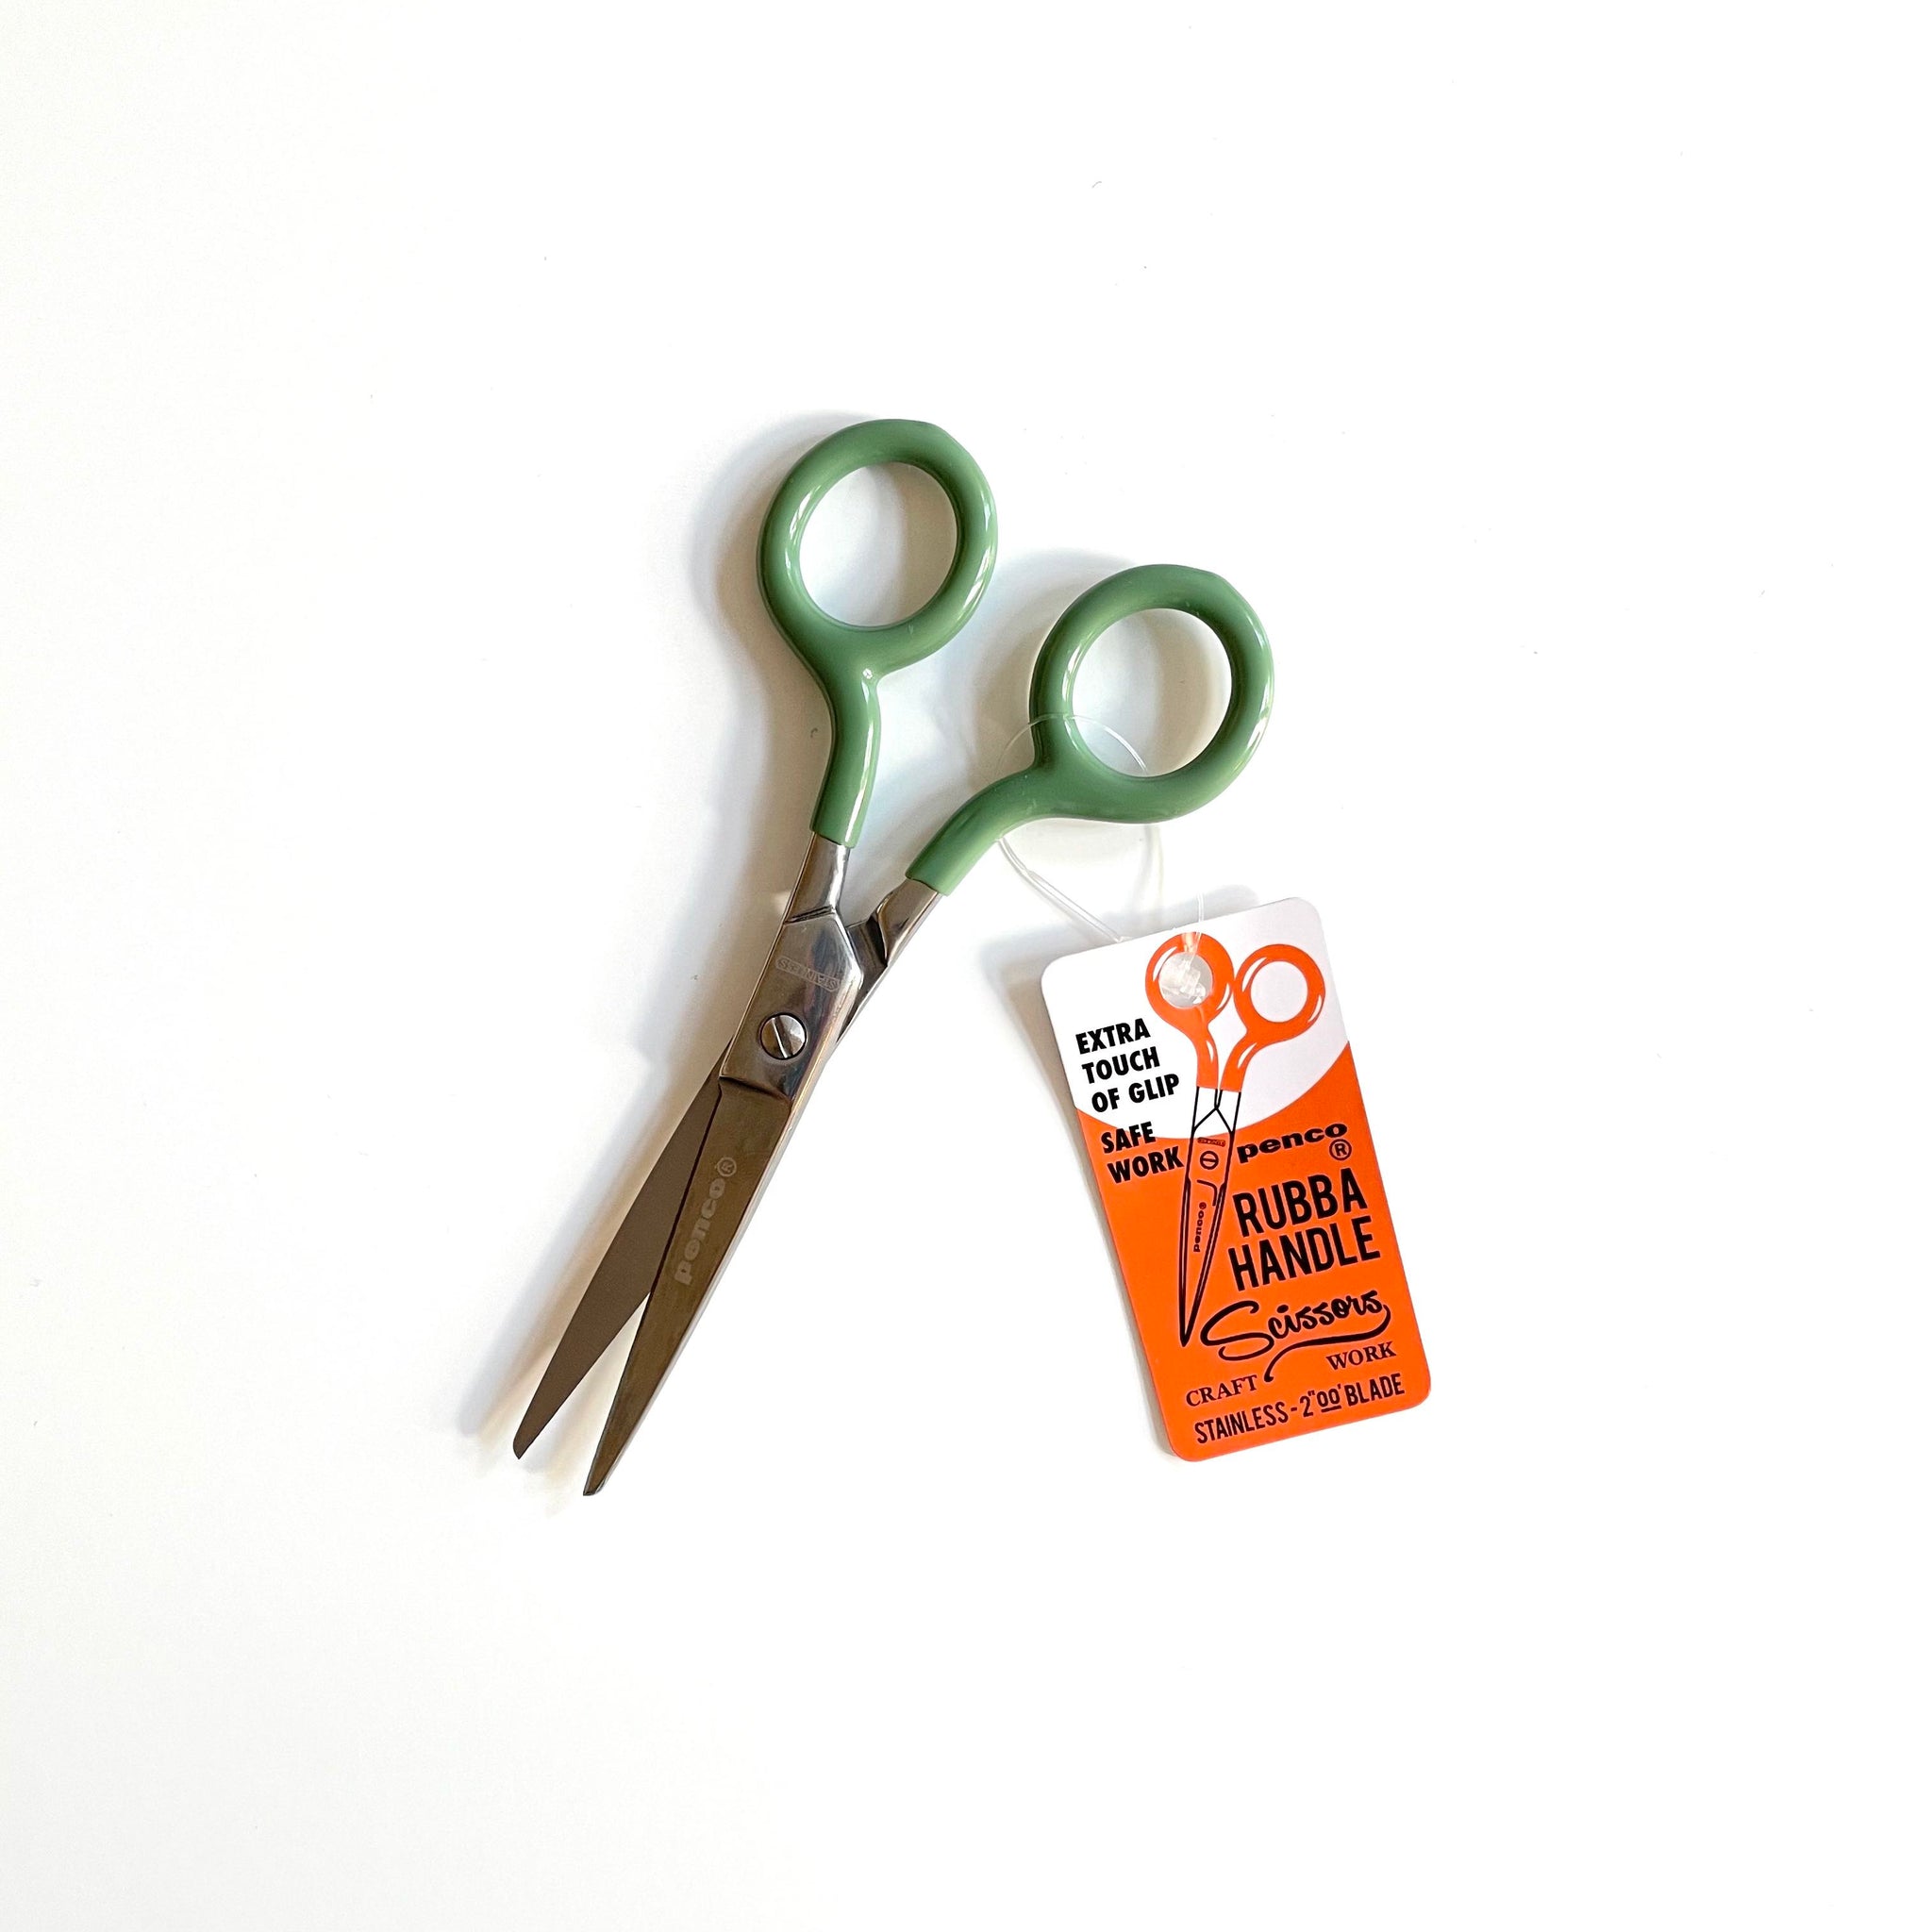 Hightide Penco craft scissors